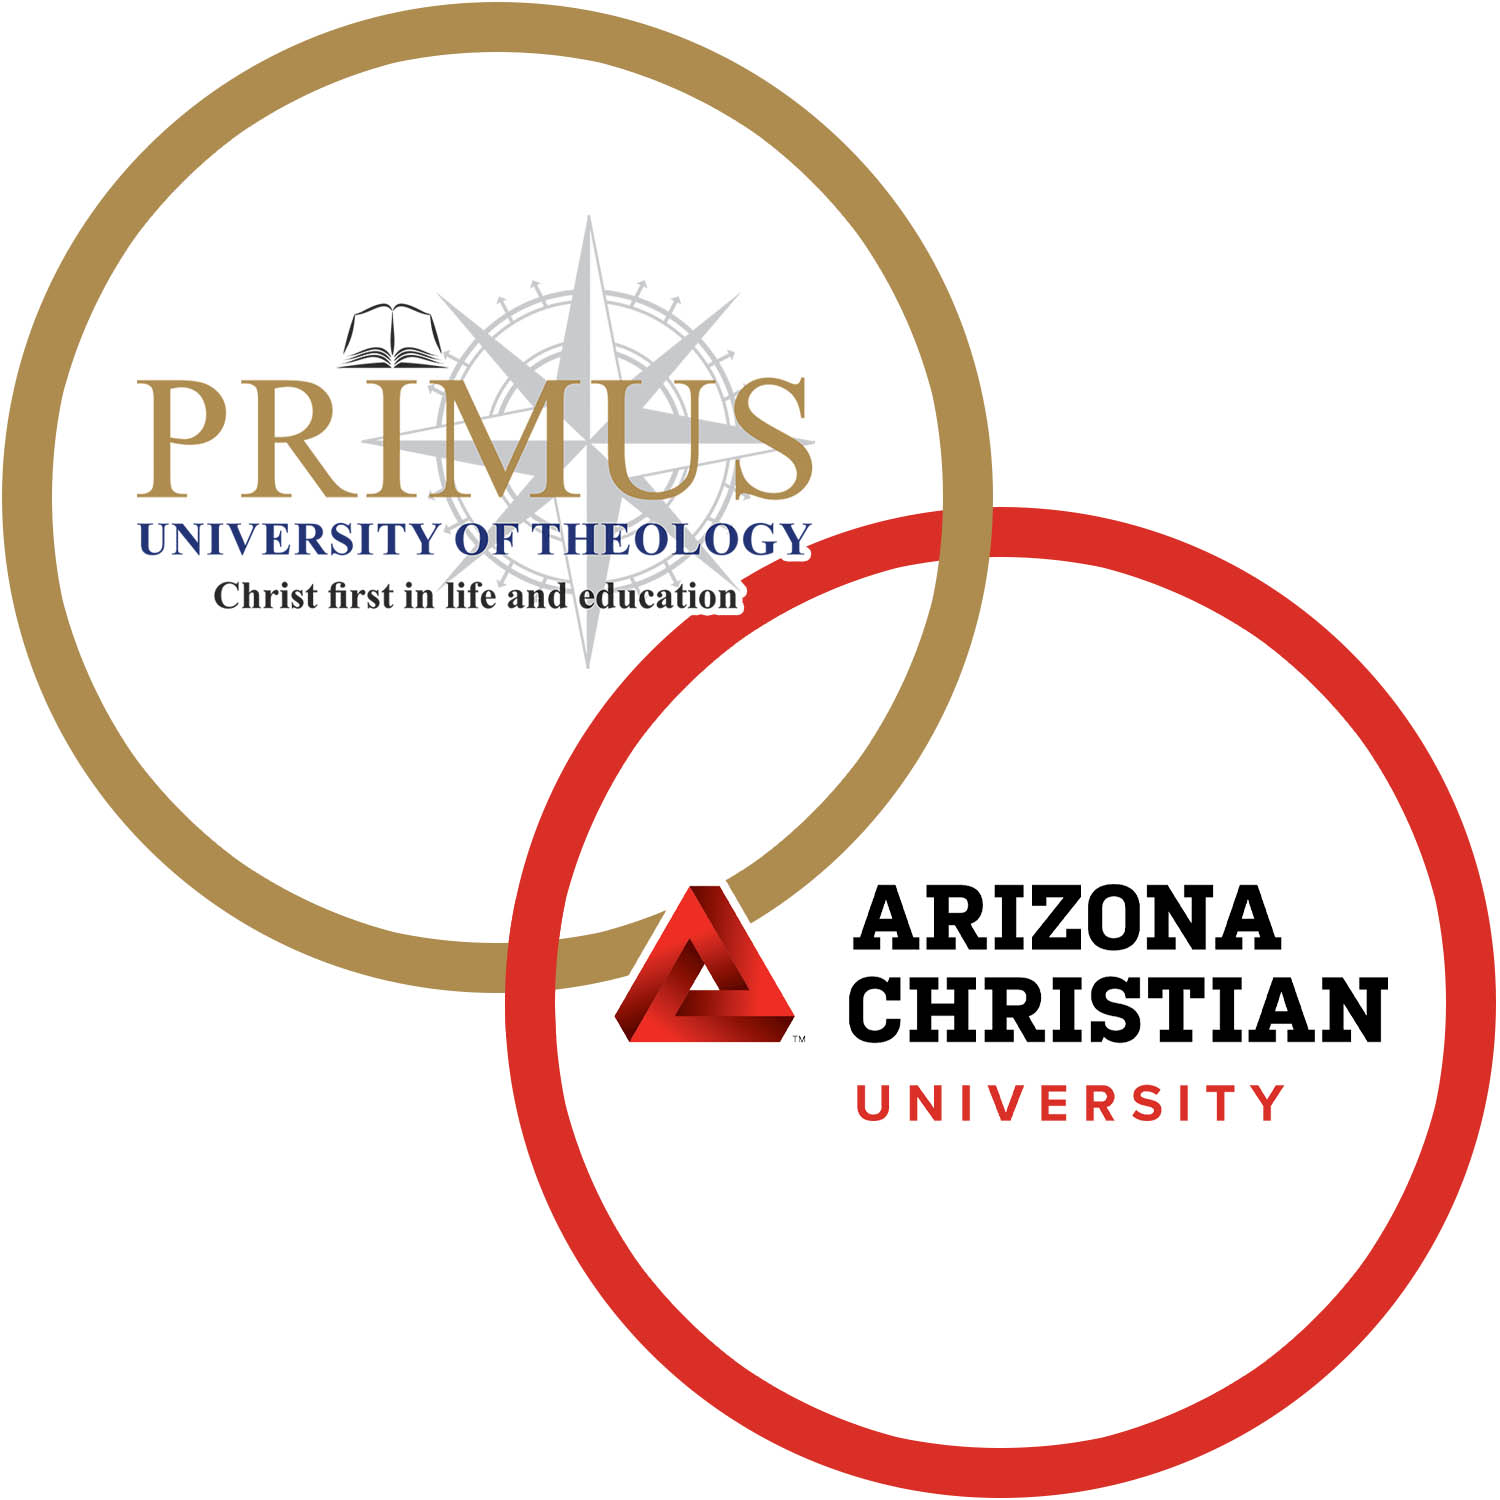 Primus University of Theology Alliance Partnership with Arizona Christian University